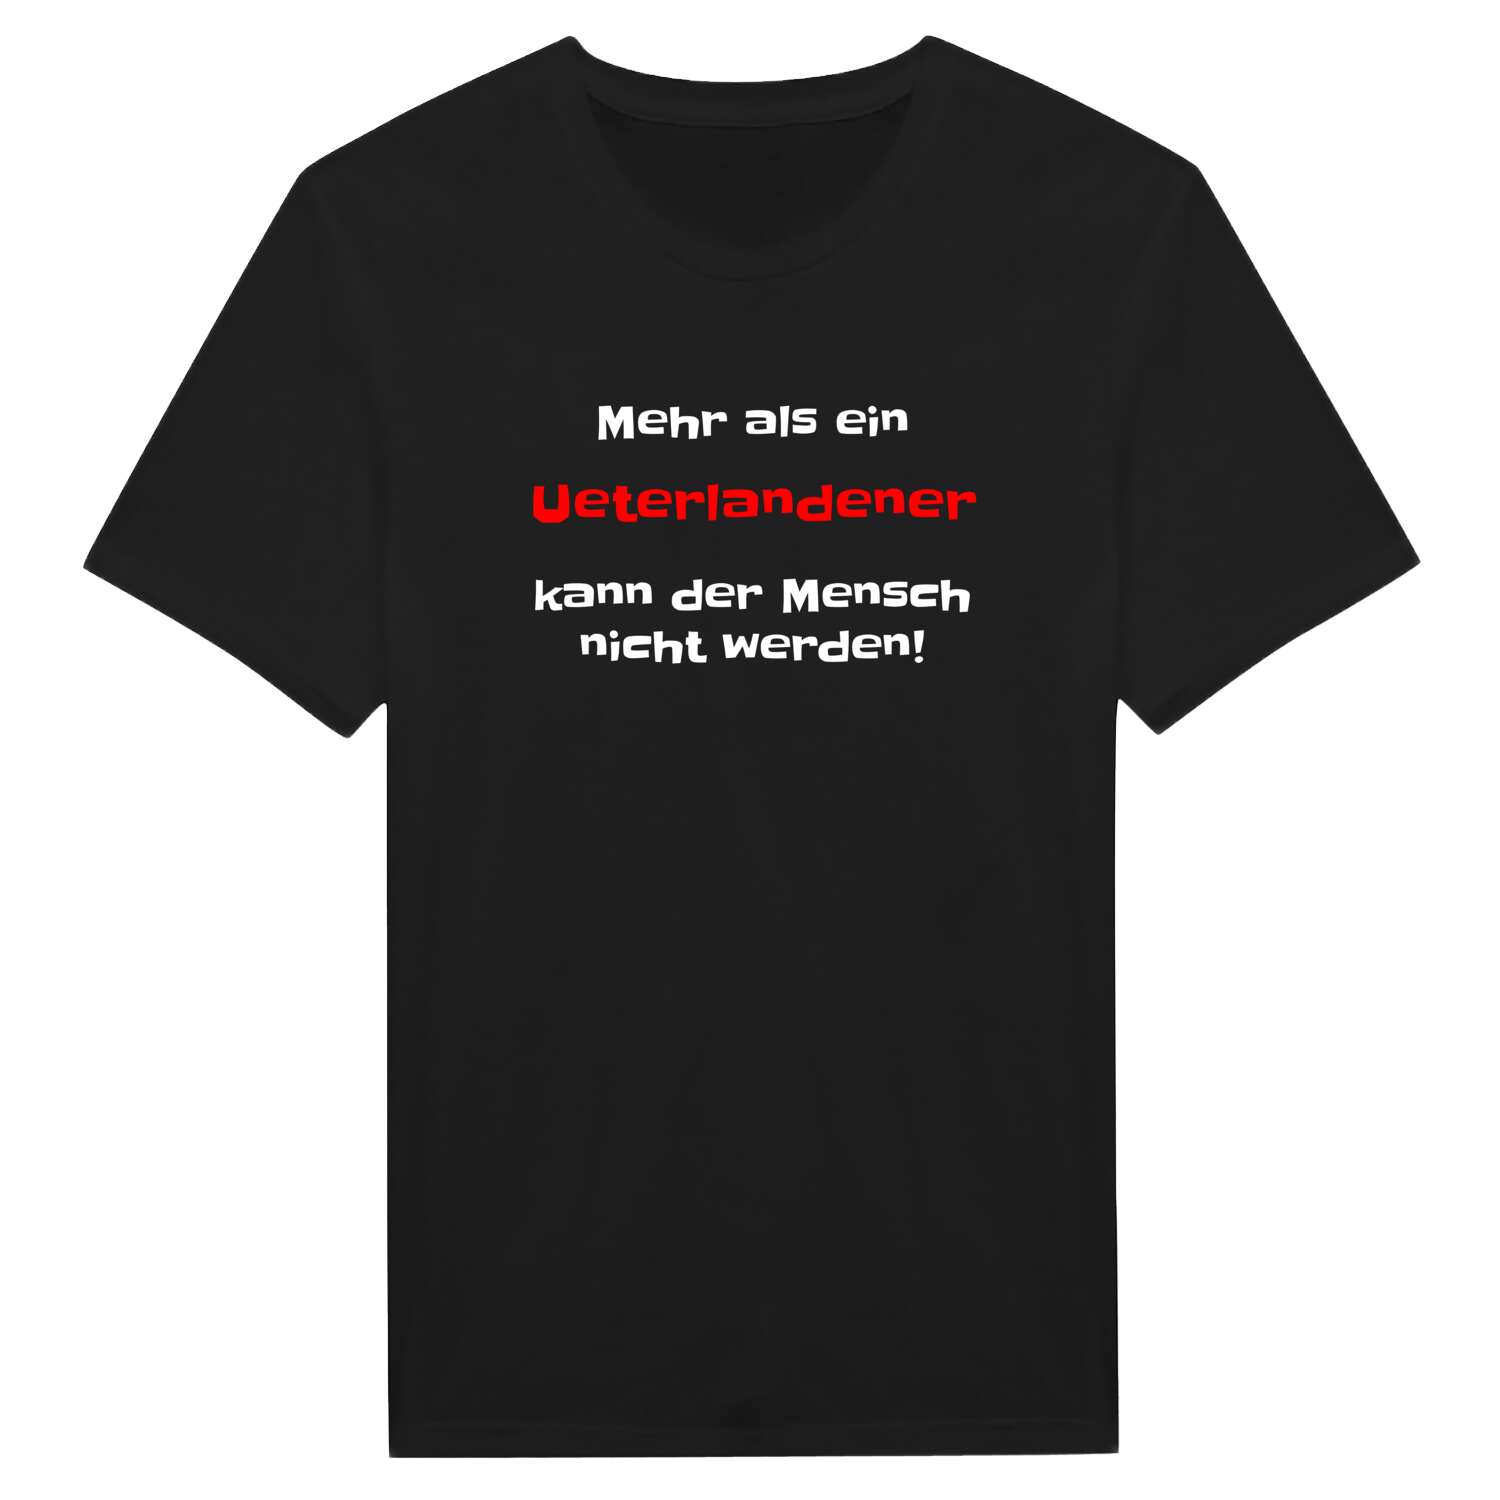 Ueterlande T-Shirt »Mehr als ein«